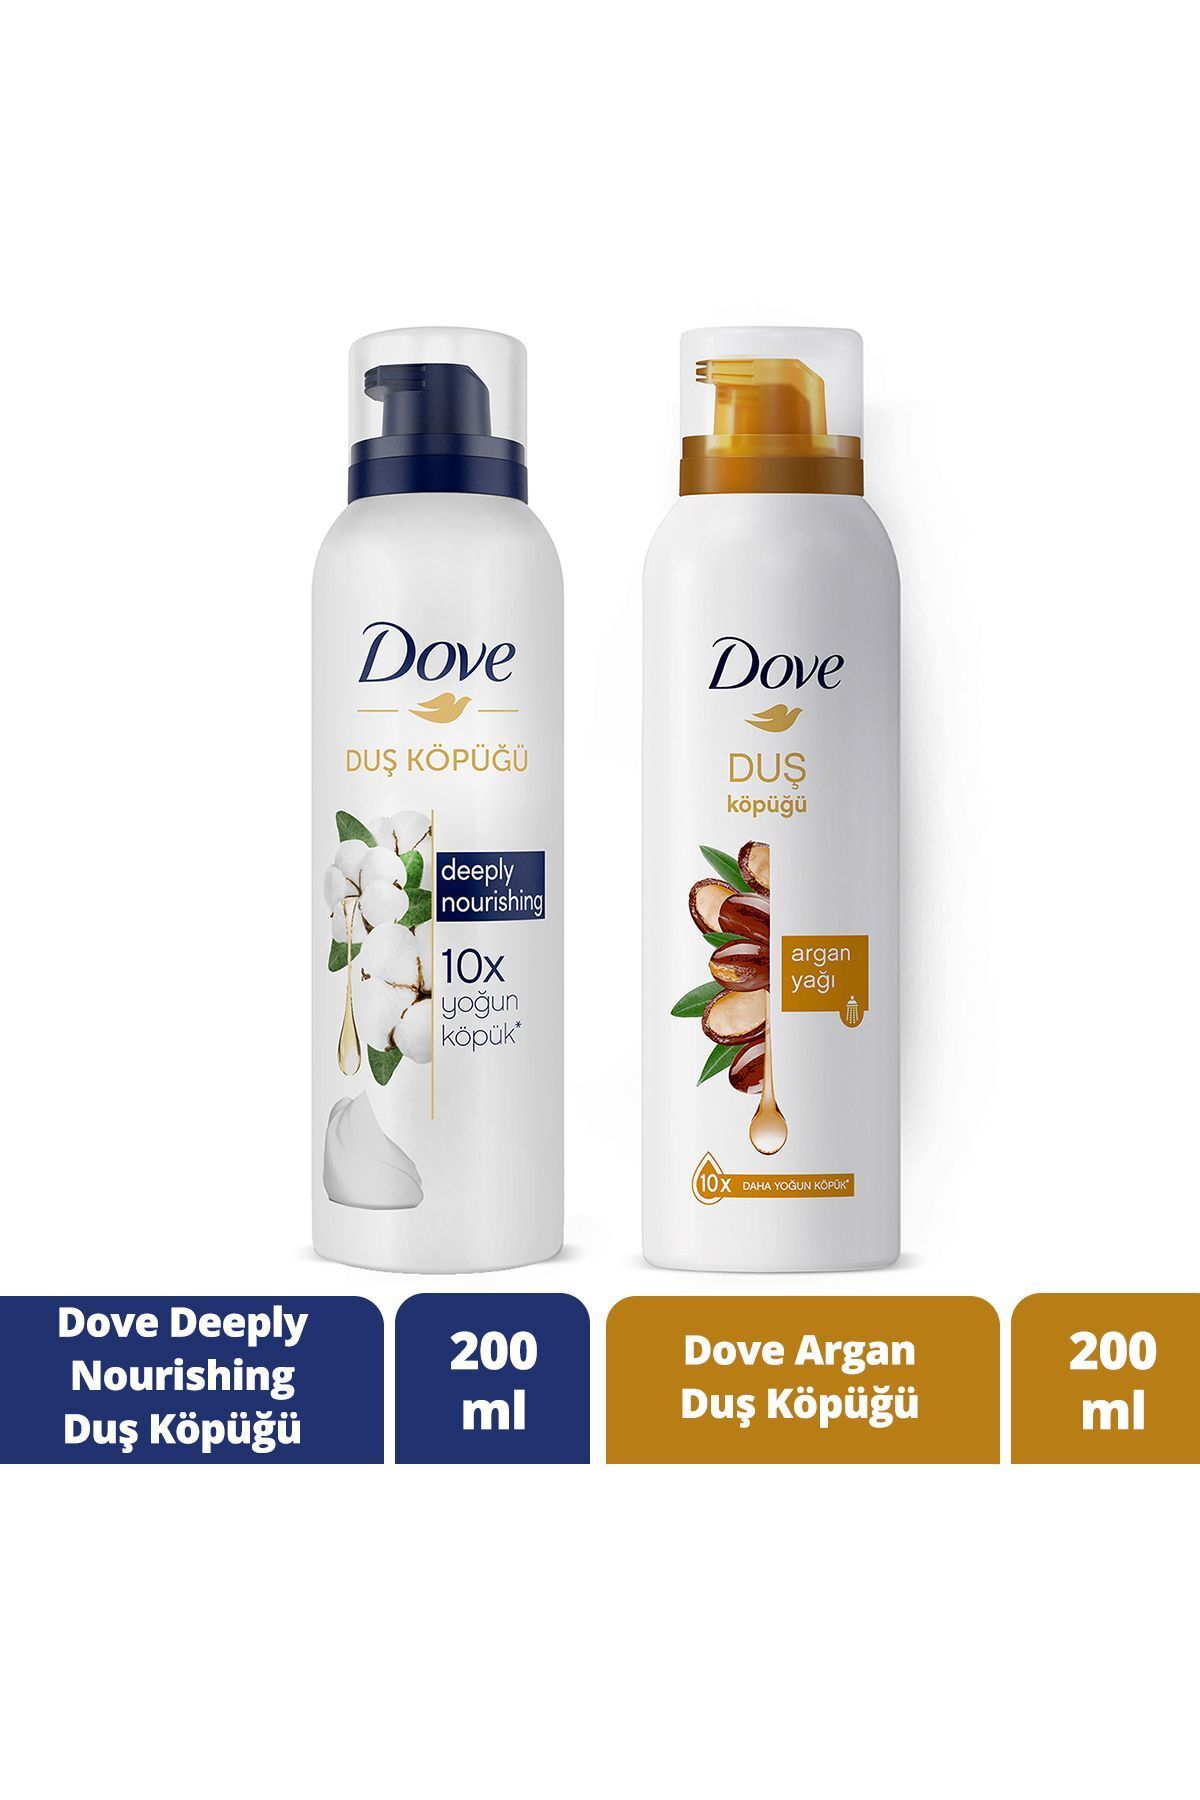 Dove Köpük Duş Jeli Argan Yağı 200 Mlx1 Duş Köpüğü Deeply Nourishing Formül 200 ml X1